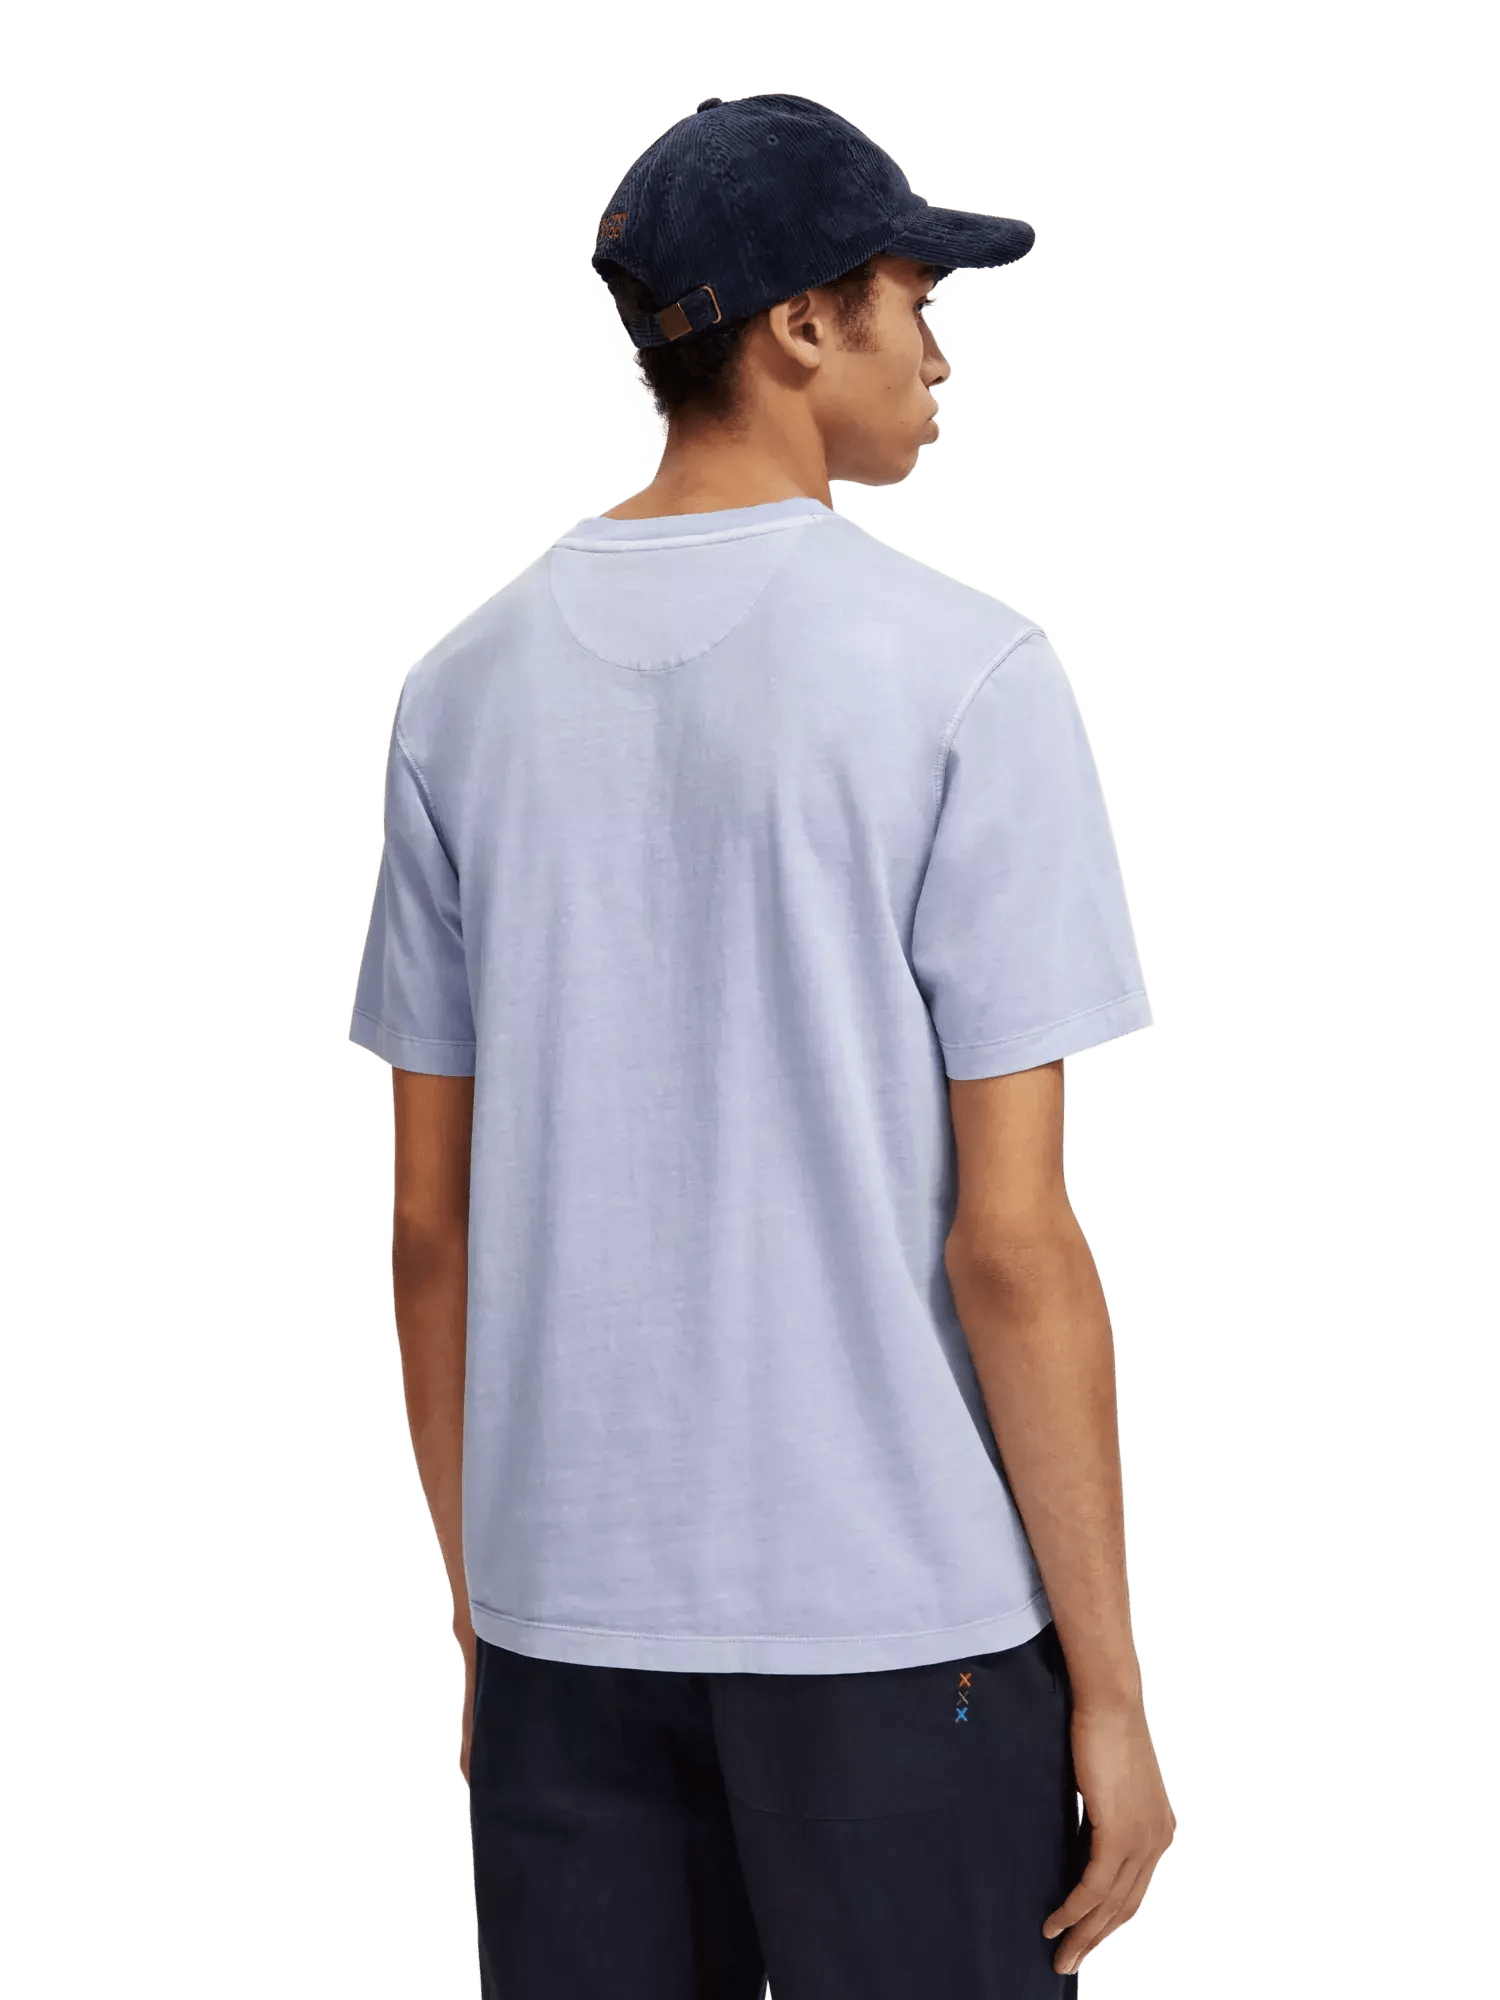 Regular fit Garment-Dyed T-shirt  PepinShop   